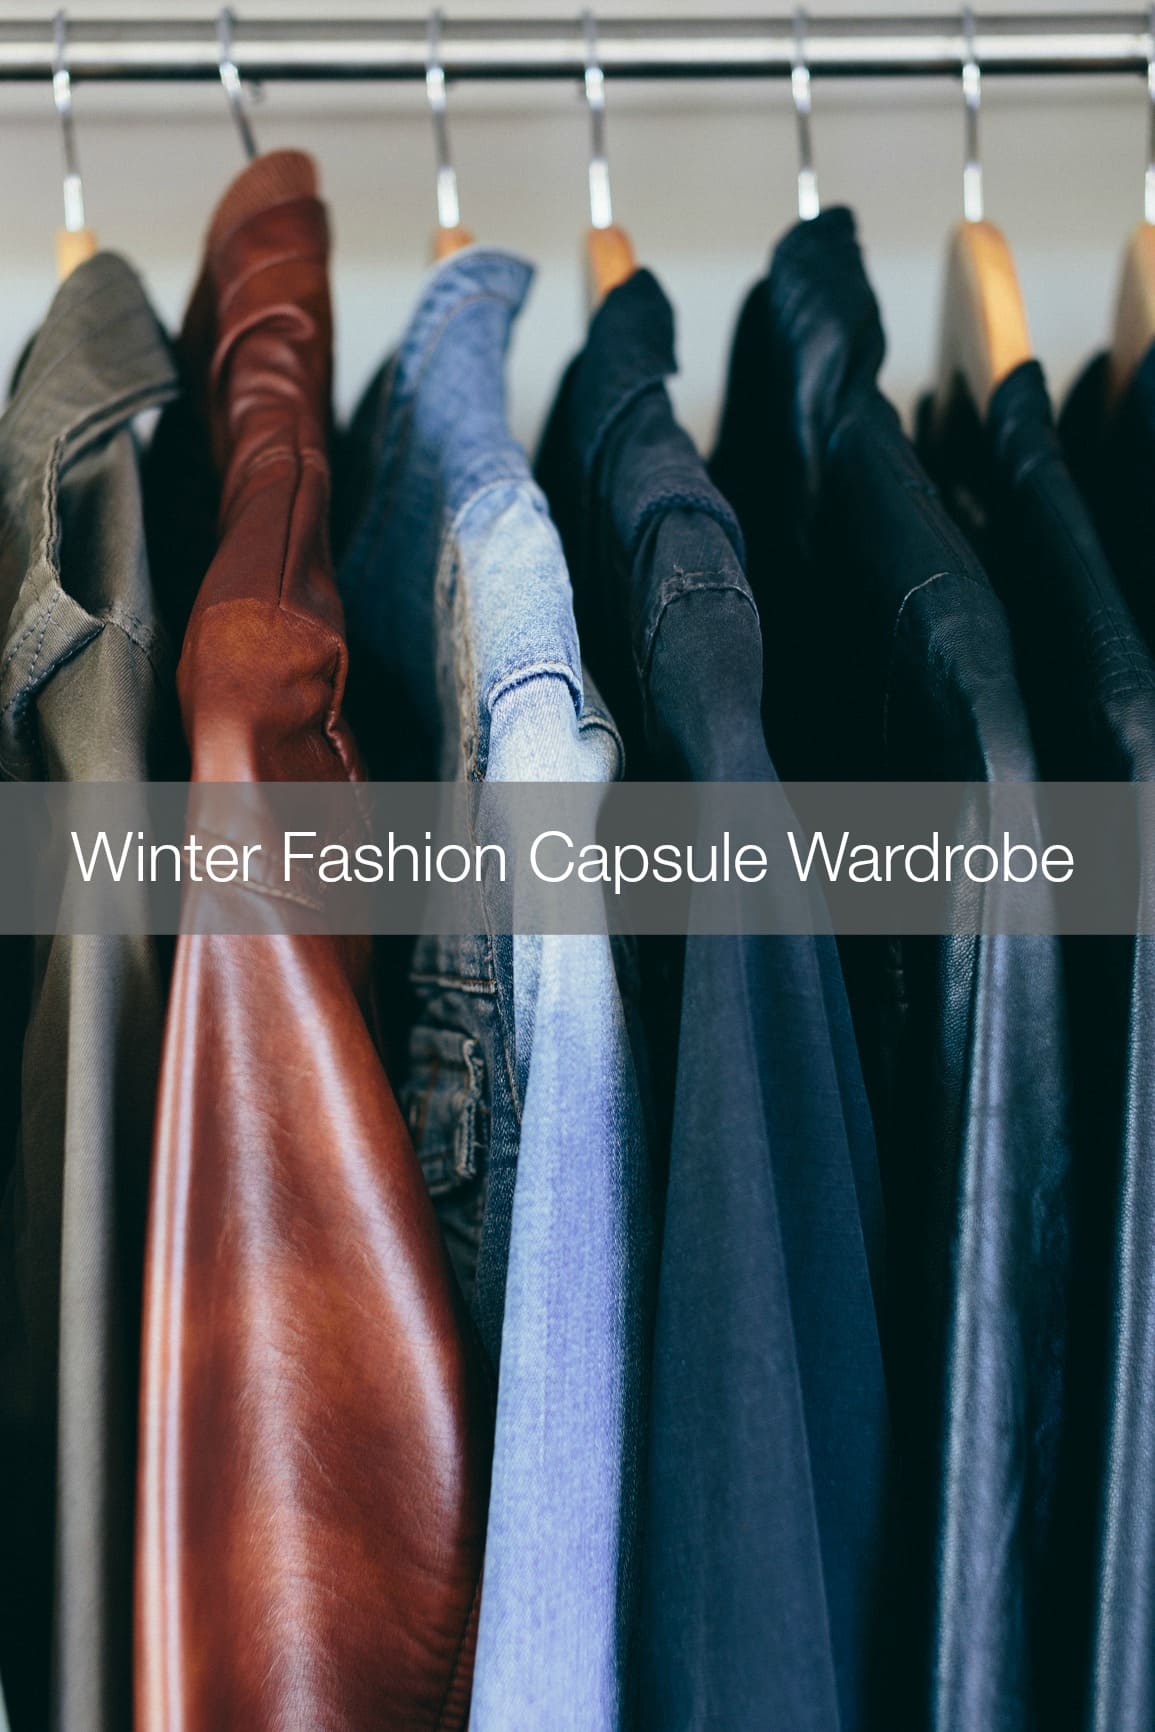 Winter 2014 Fashion Capsule Wardrobe Project